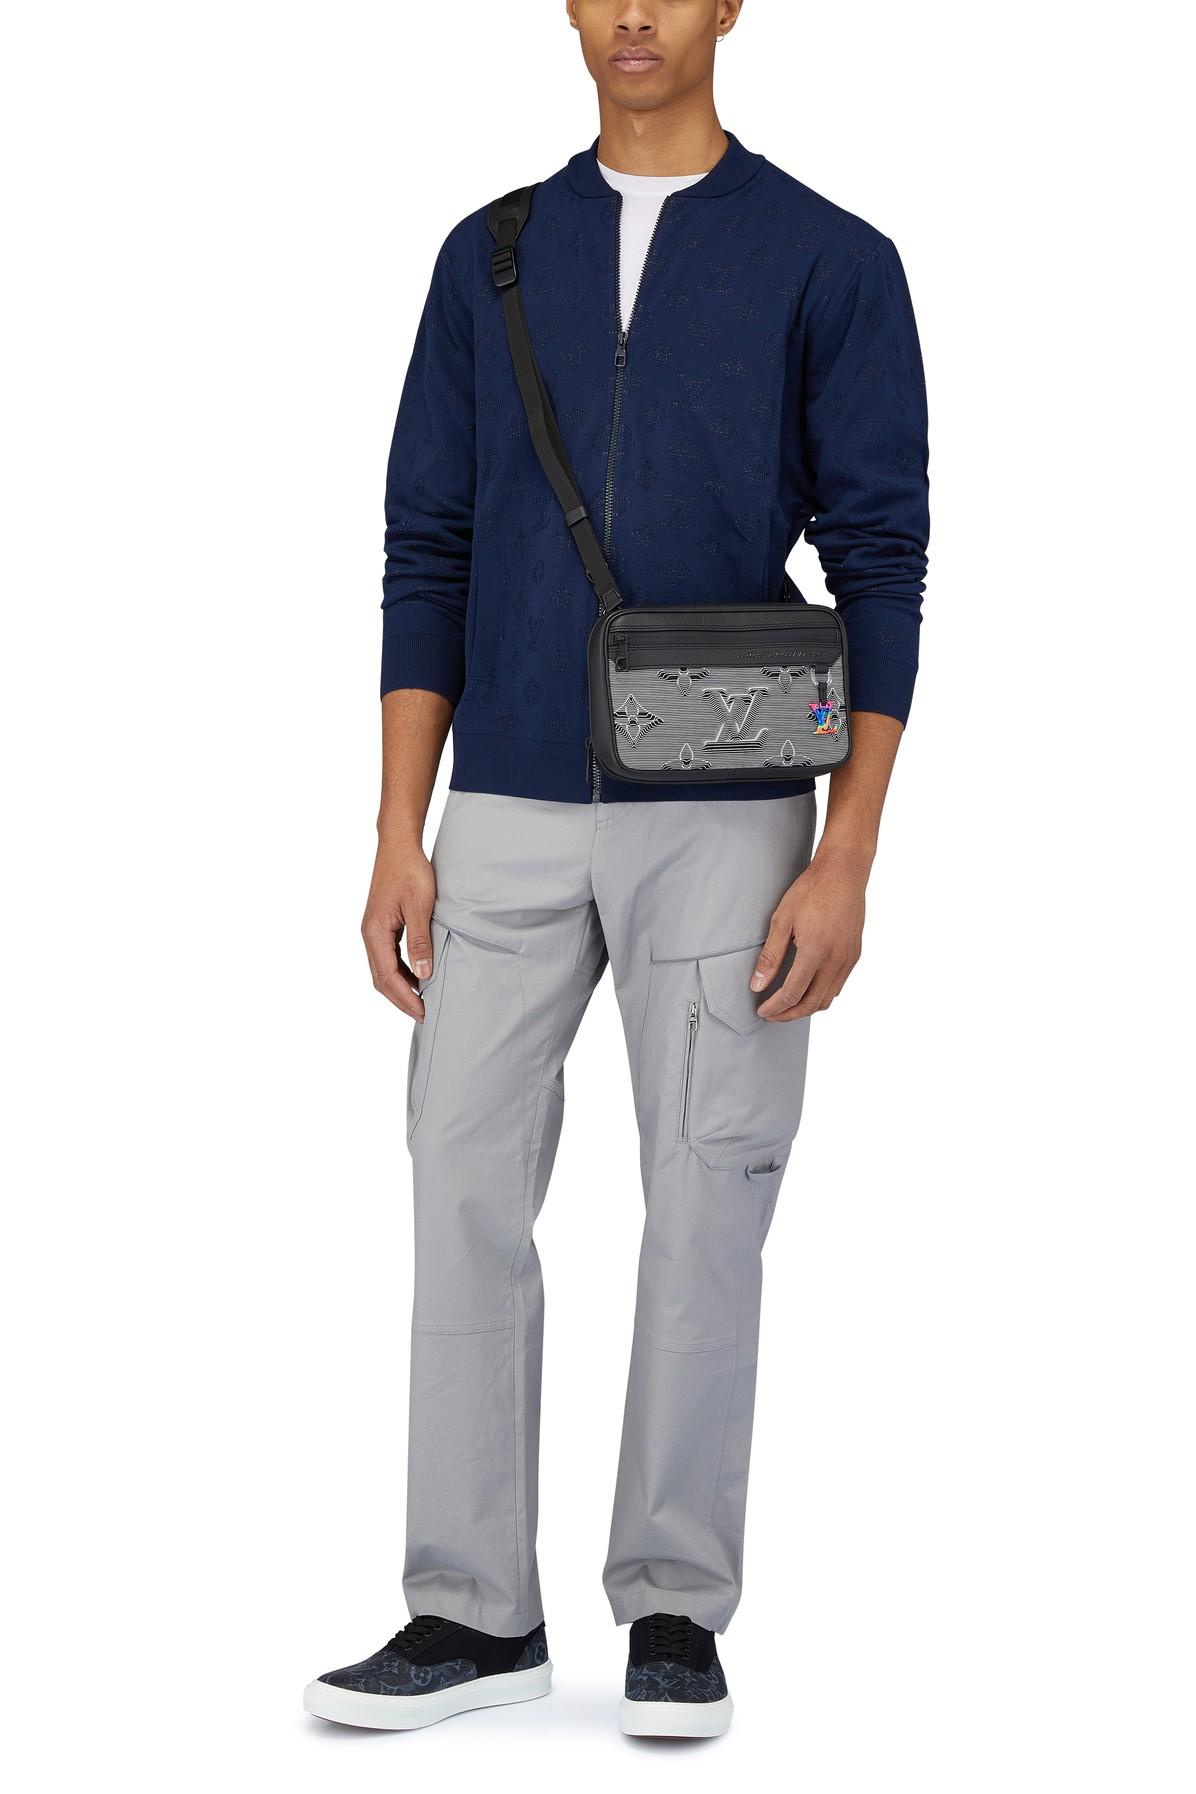 Louis Vuitton Men's White Trocadero Slip-On Louis V. Sneaker – Luxuria & Co.